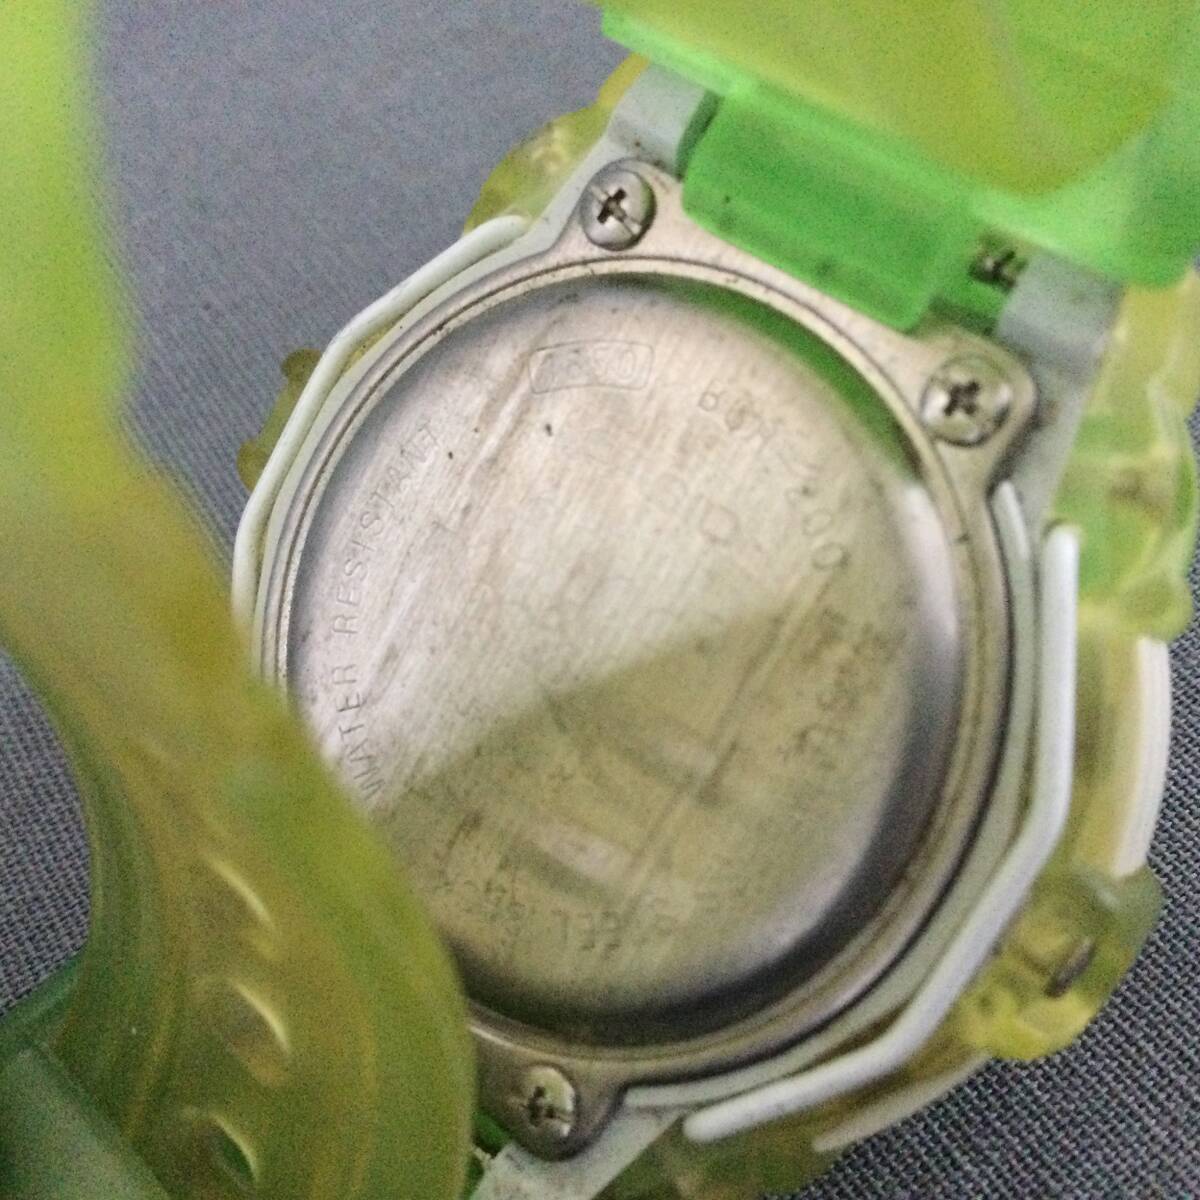 564/17 GJ60500 CASIO Baby-G Reef BGR-200 Shock Resistant デジタル 稼働 腕時計 グリーン カシオ ベビーGの画像2